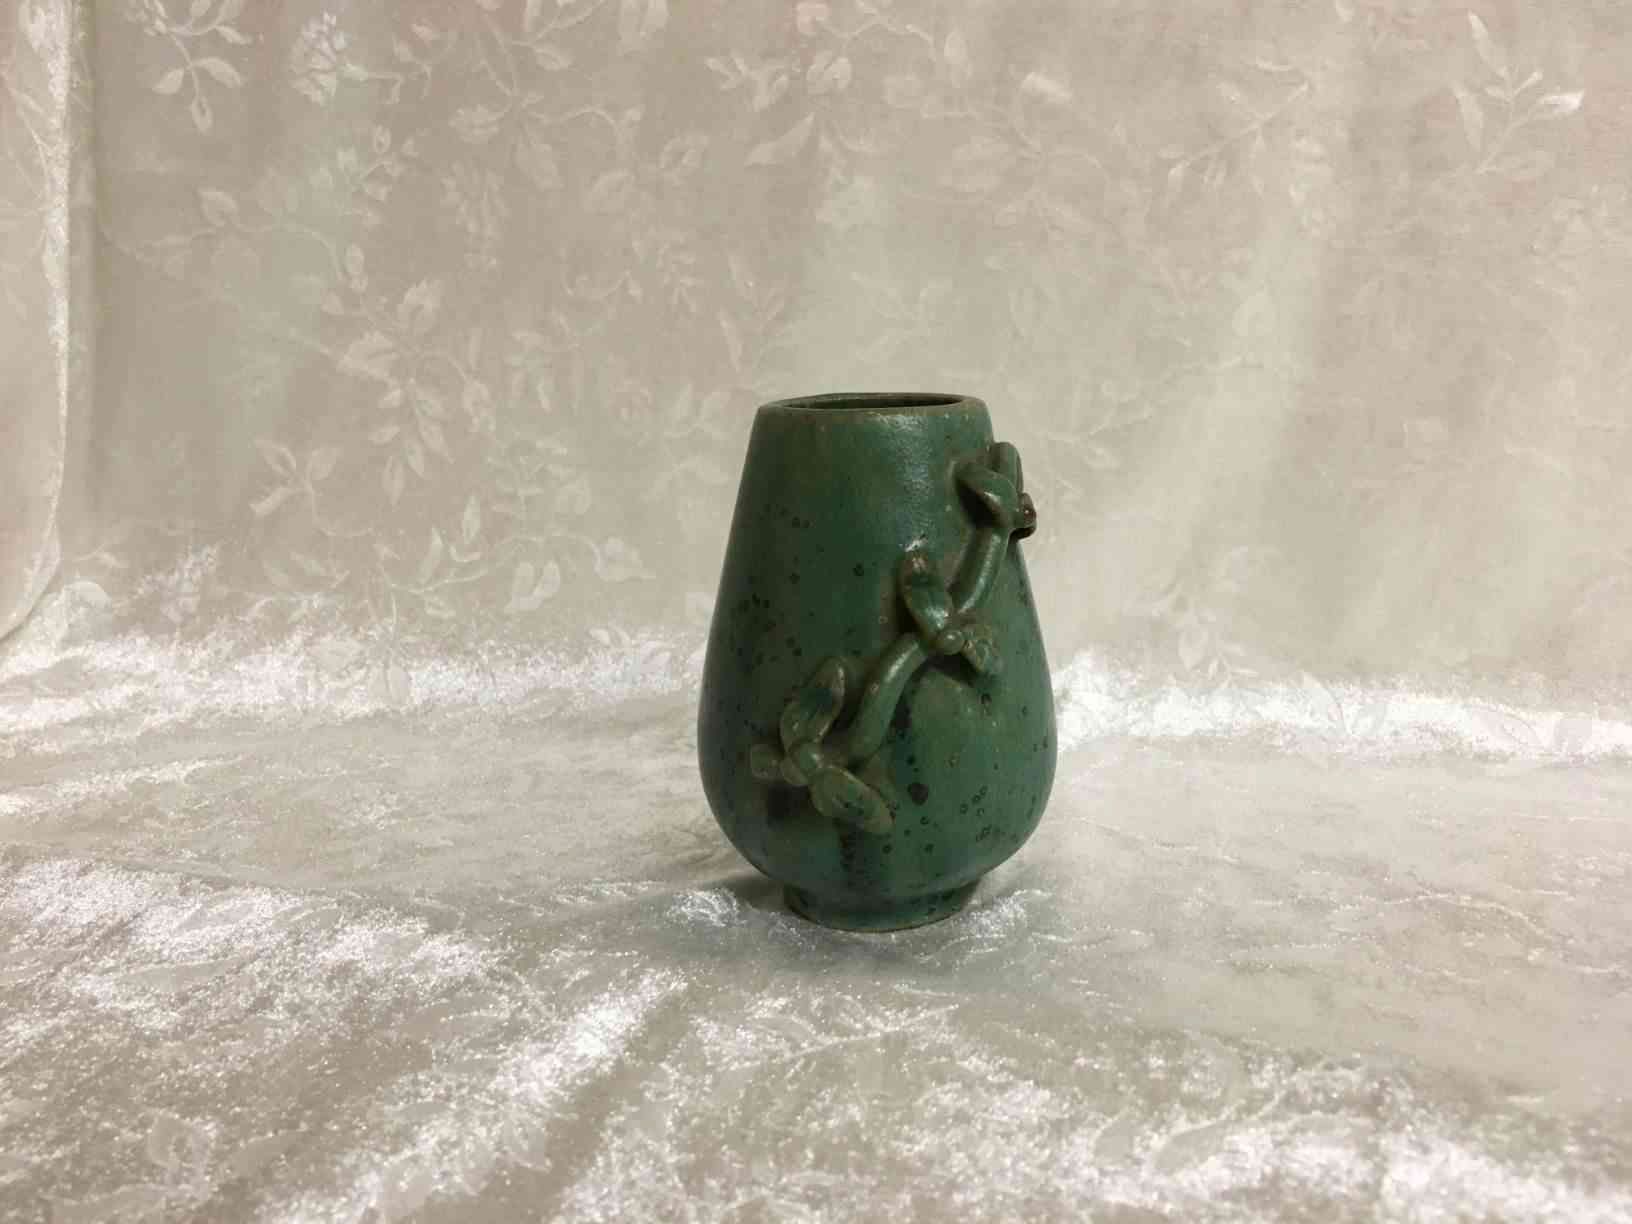 Arne Bang vase 9 cm høj med sjælden grøn glasur samt modellering. I perfekt stand. Pris: 4.500,- Kr.